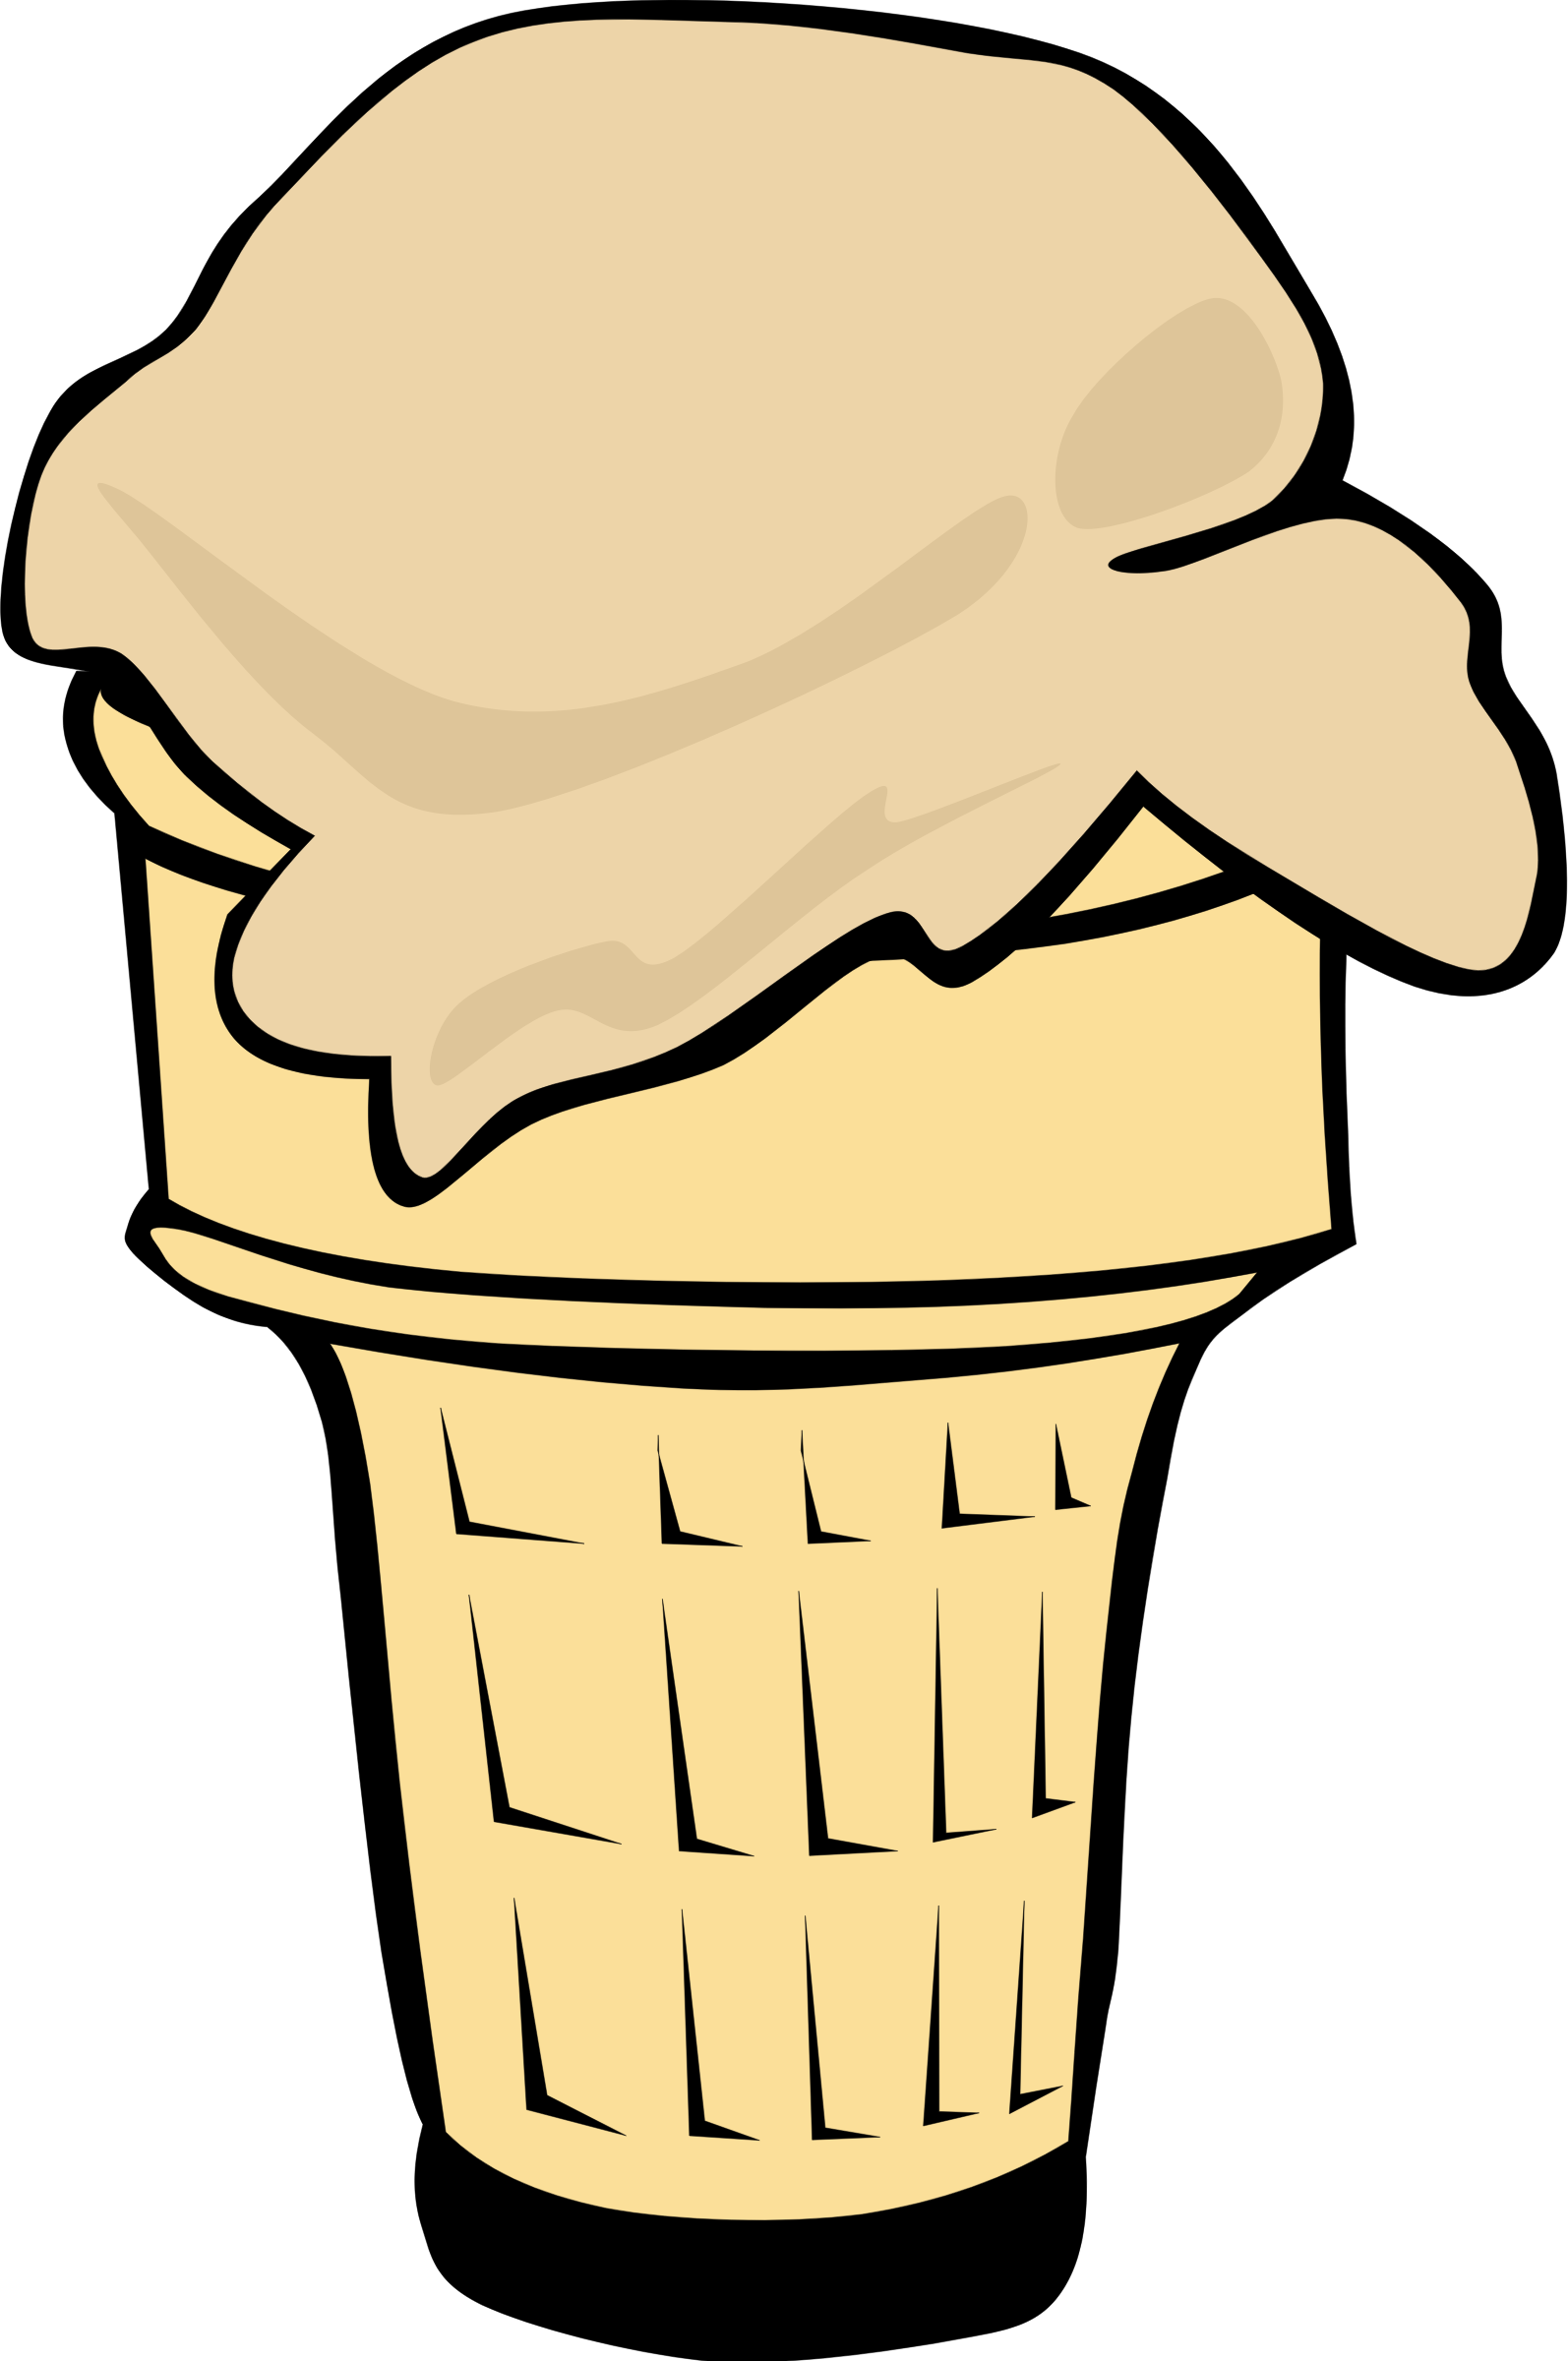 Icecream empty cone